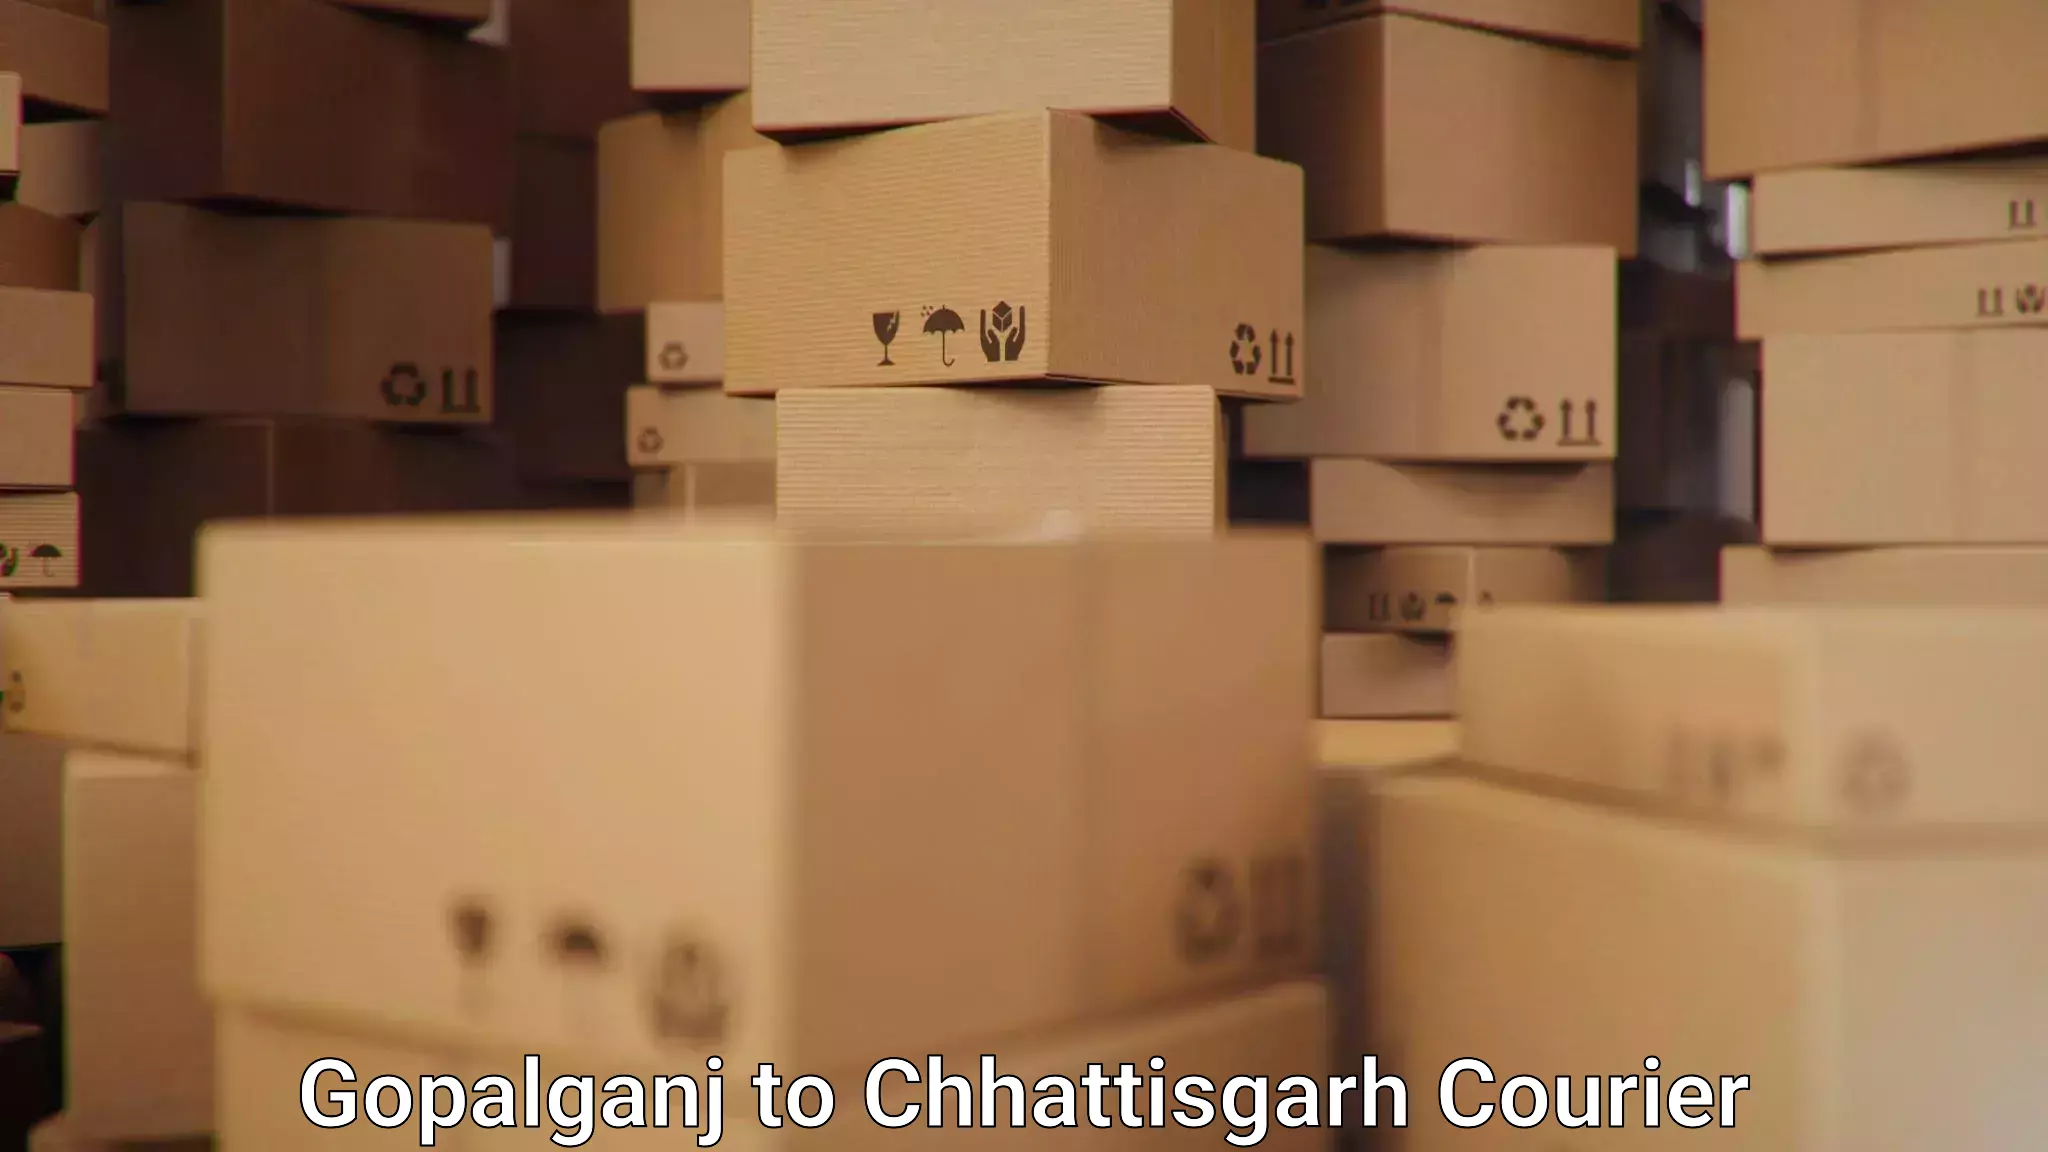 Nationwide courier service Gopalganj to Nagri